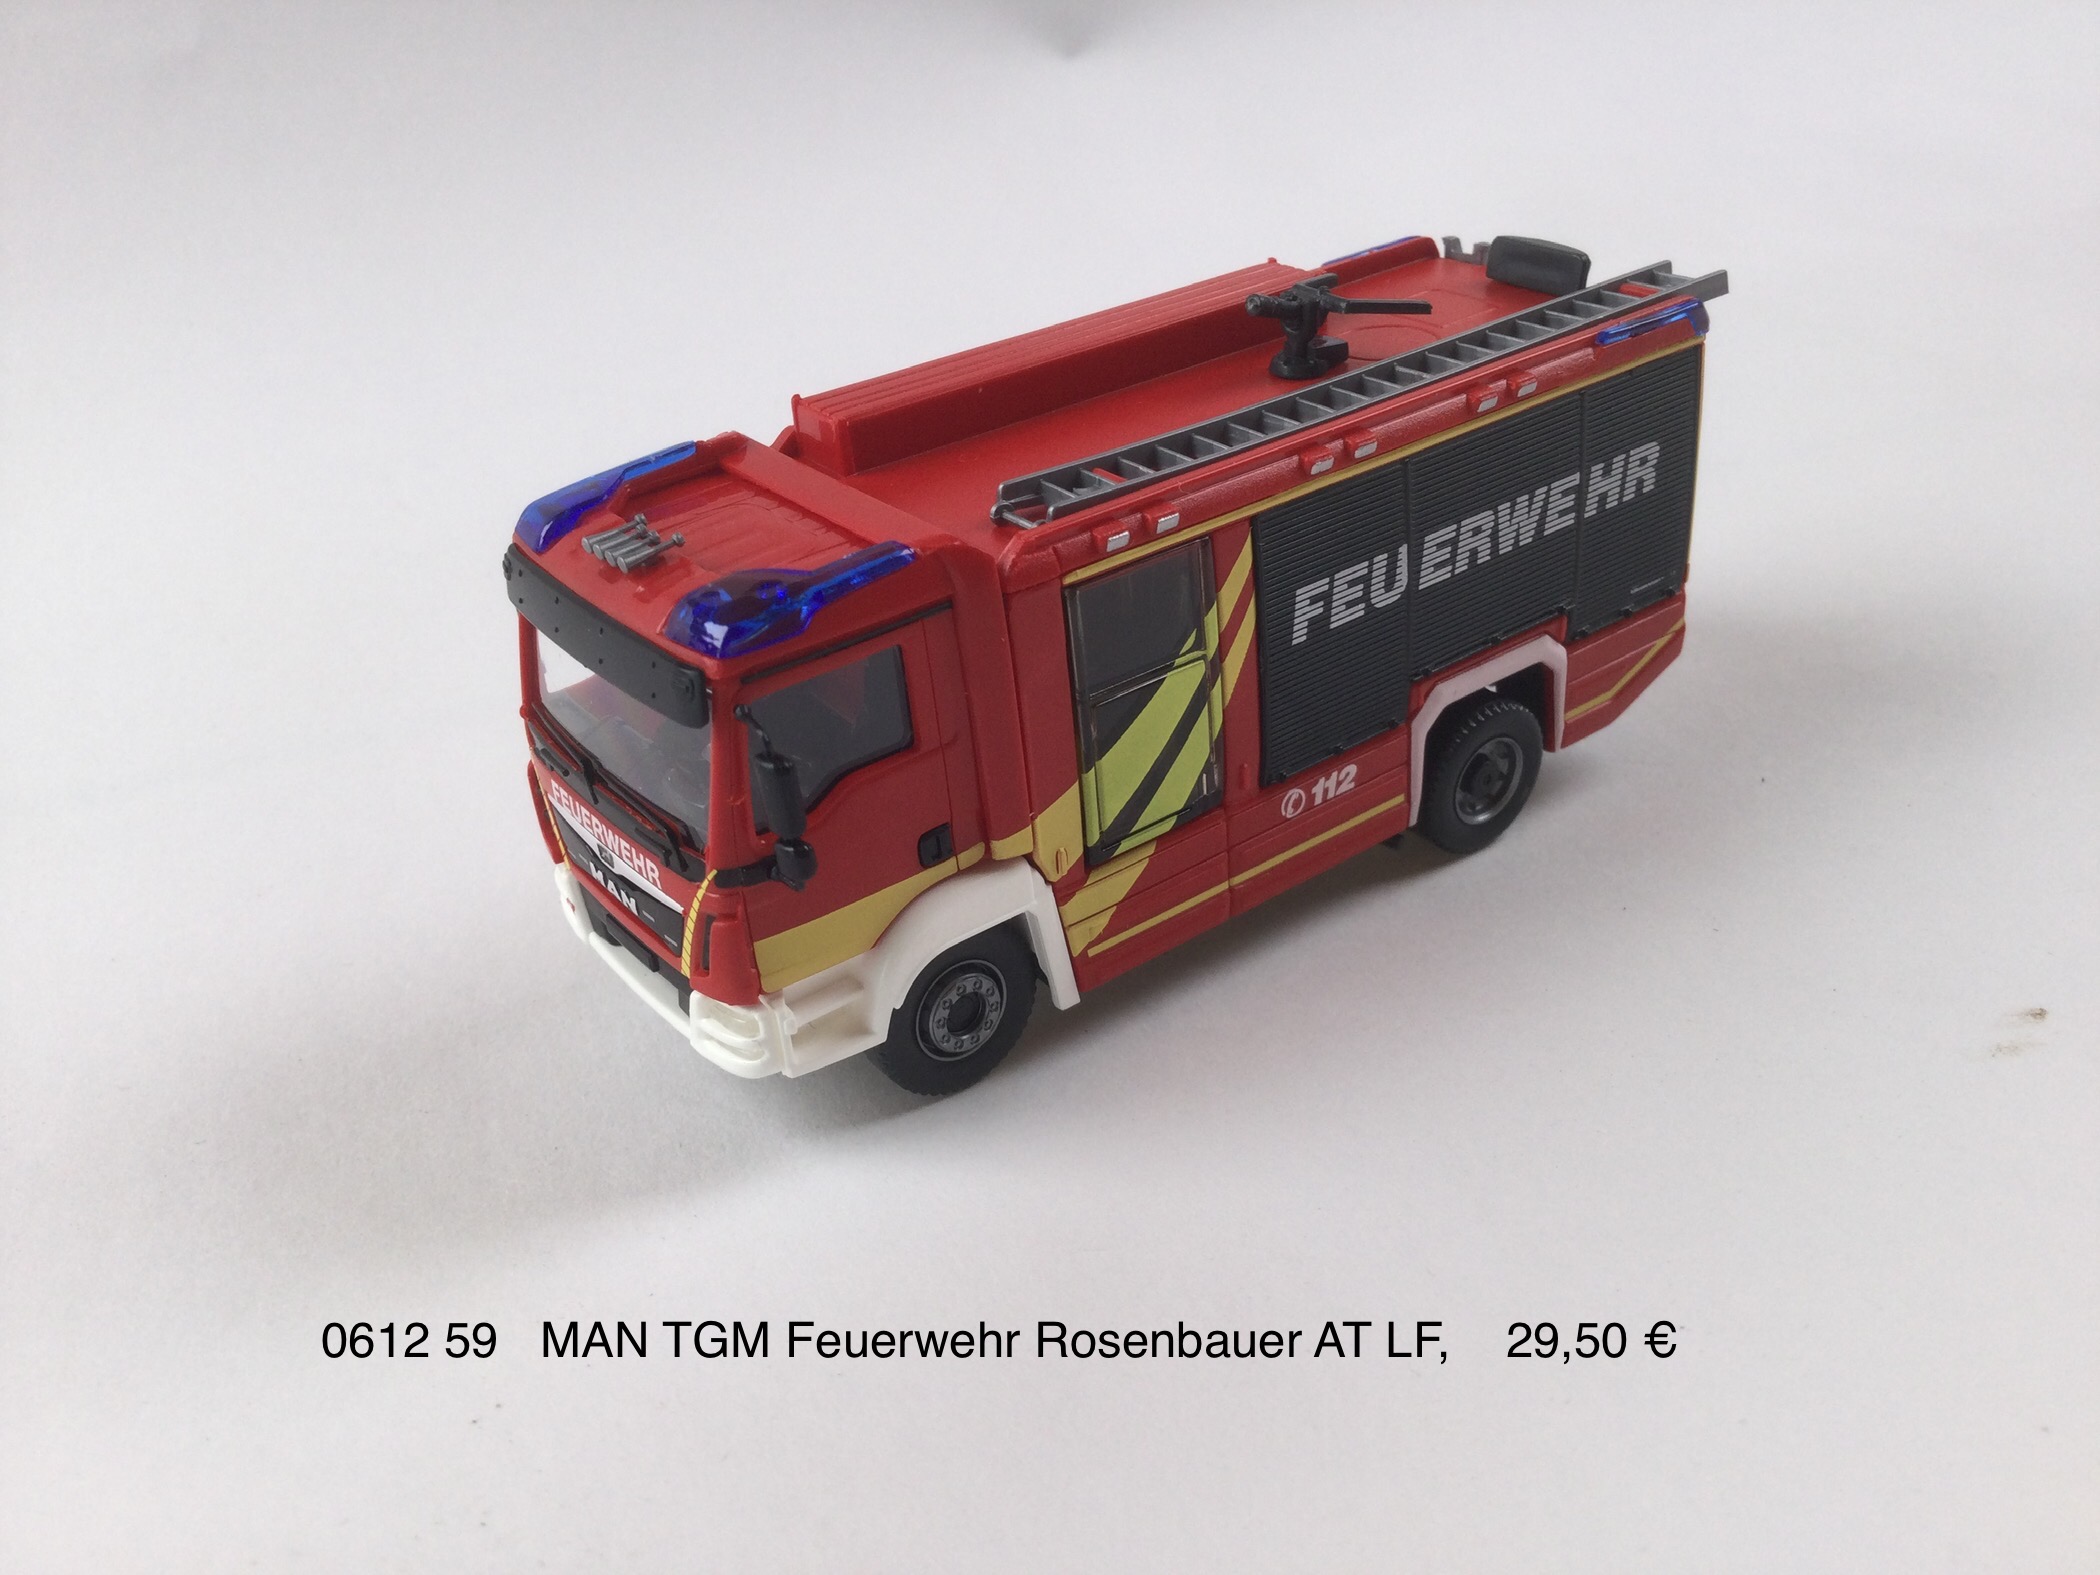 MAN TGM Feuerwehr Rosenbauer AT LF